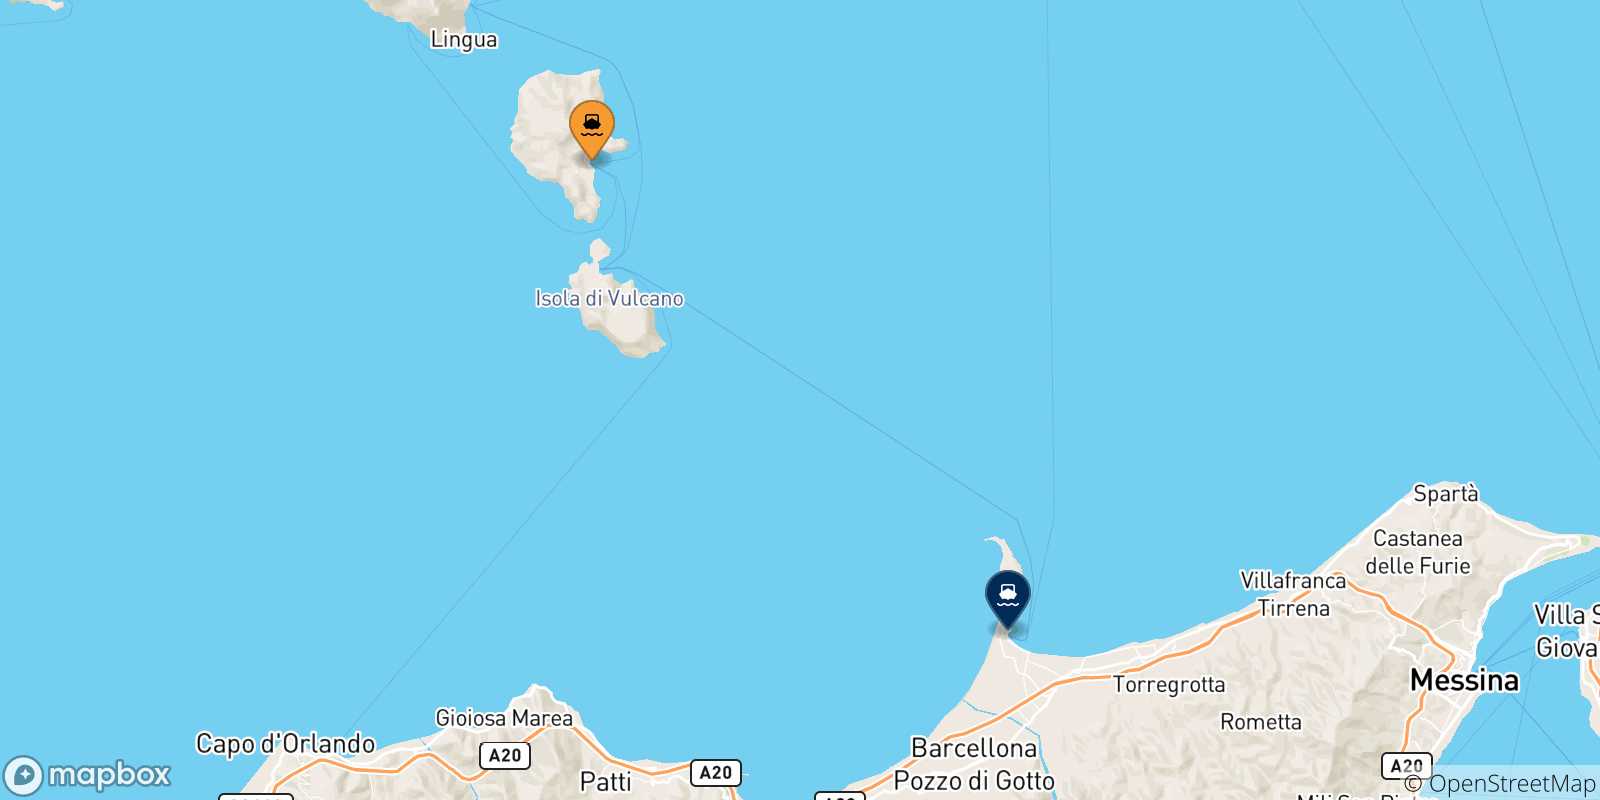 Carte des traversées possibles entre Lipari et la Sicile